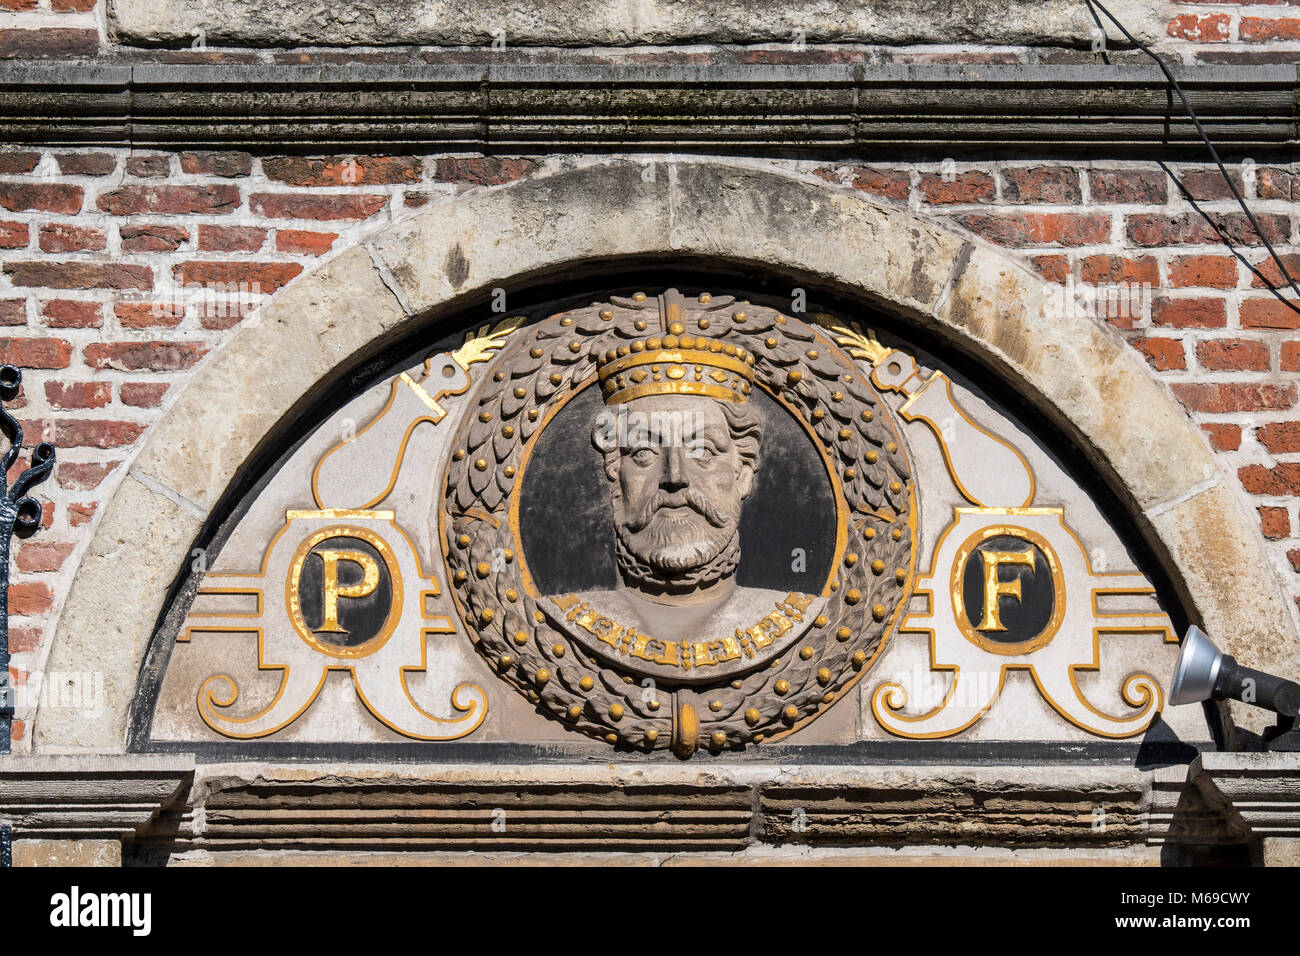 One of 14 busts of the Count of Flanders, Philip II of Spain / Philippus Filius on 16th century house front De Gekroonde Hoofden, Ghent, Belgium Stock Photo